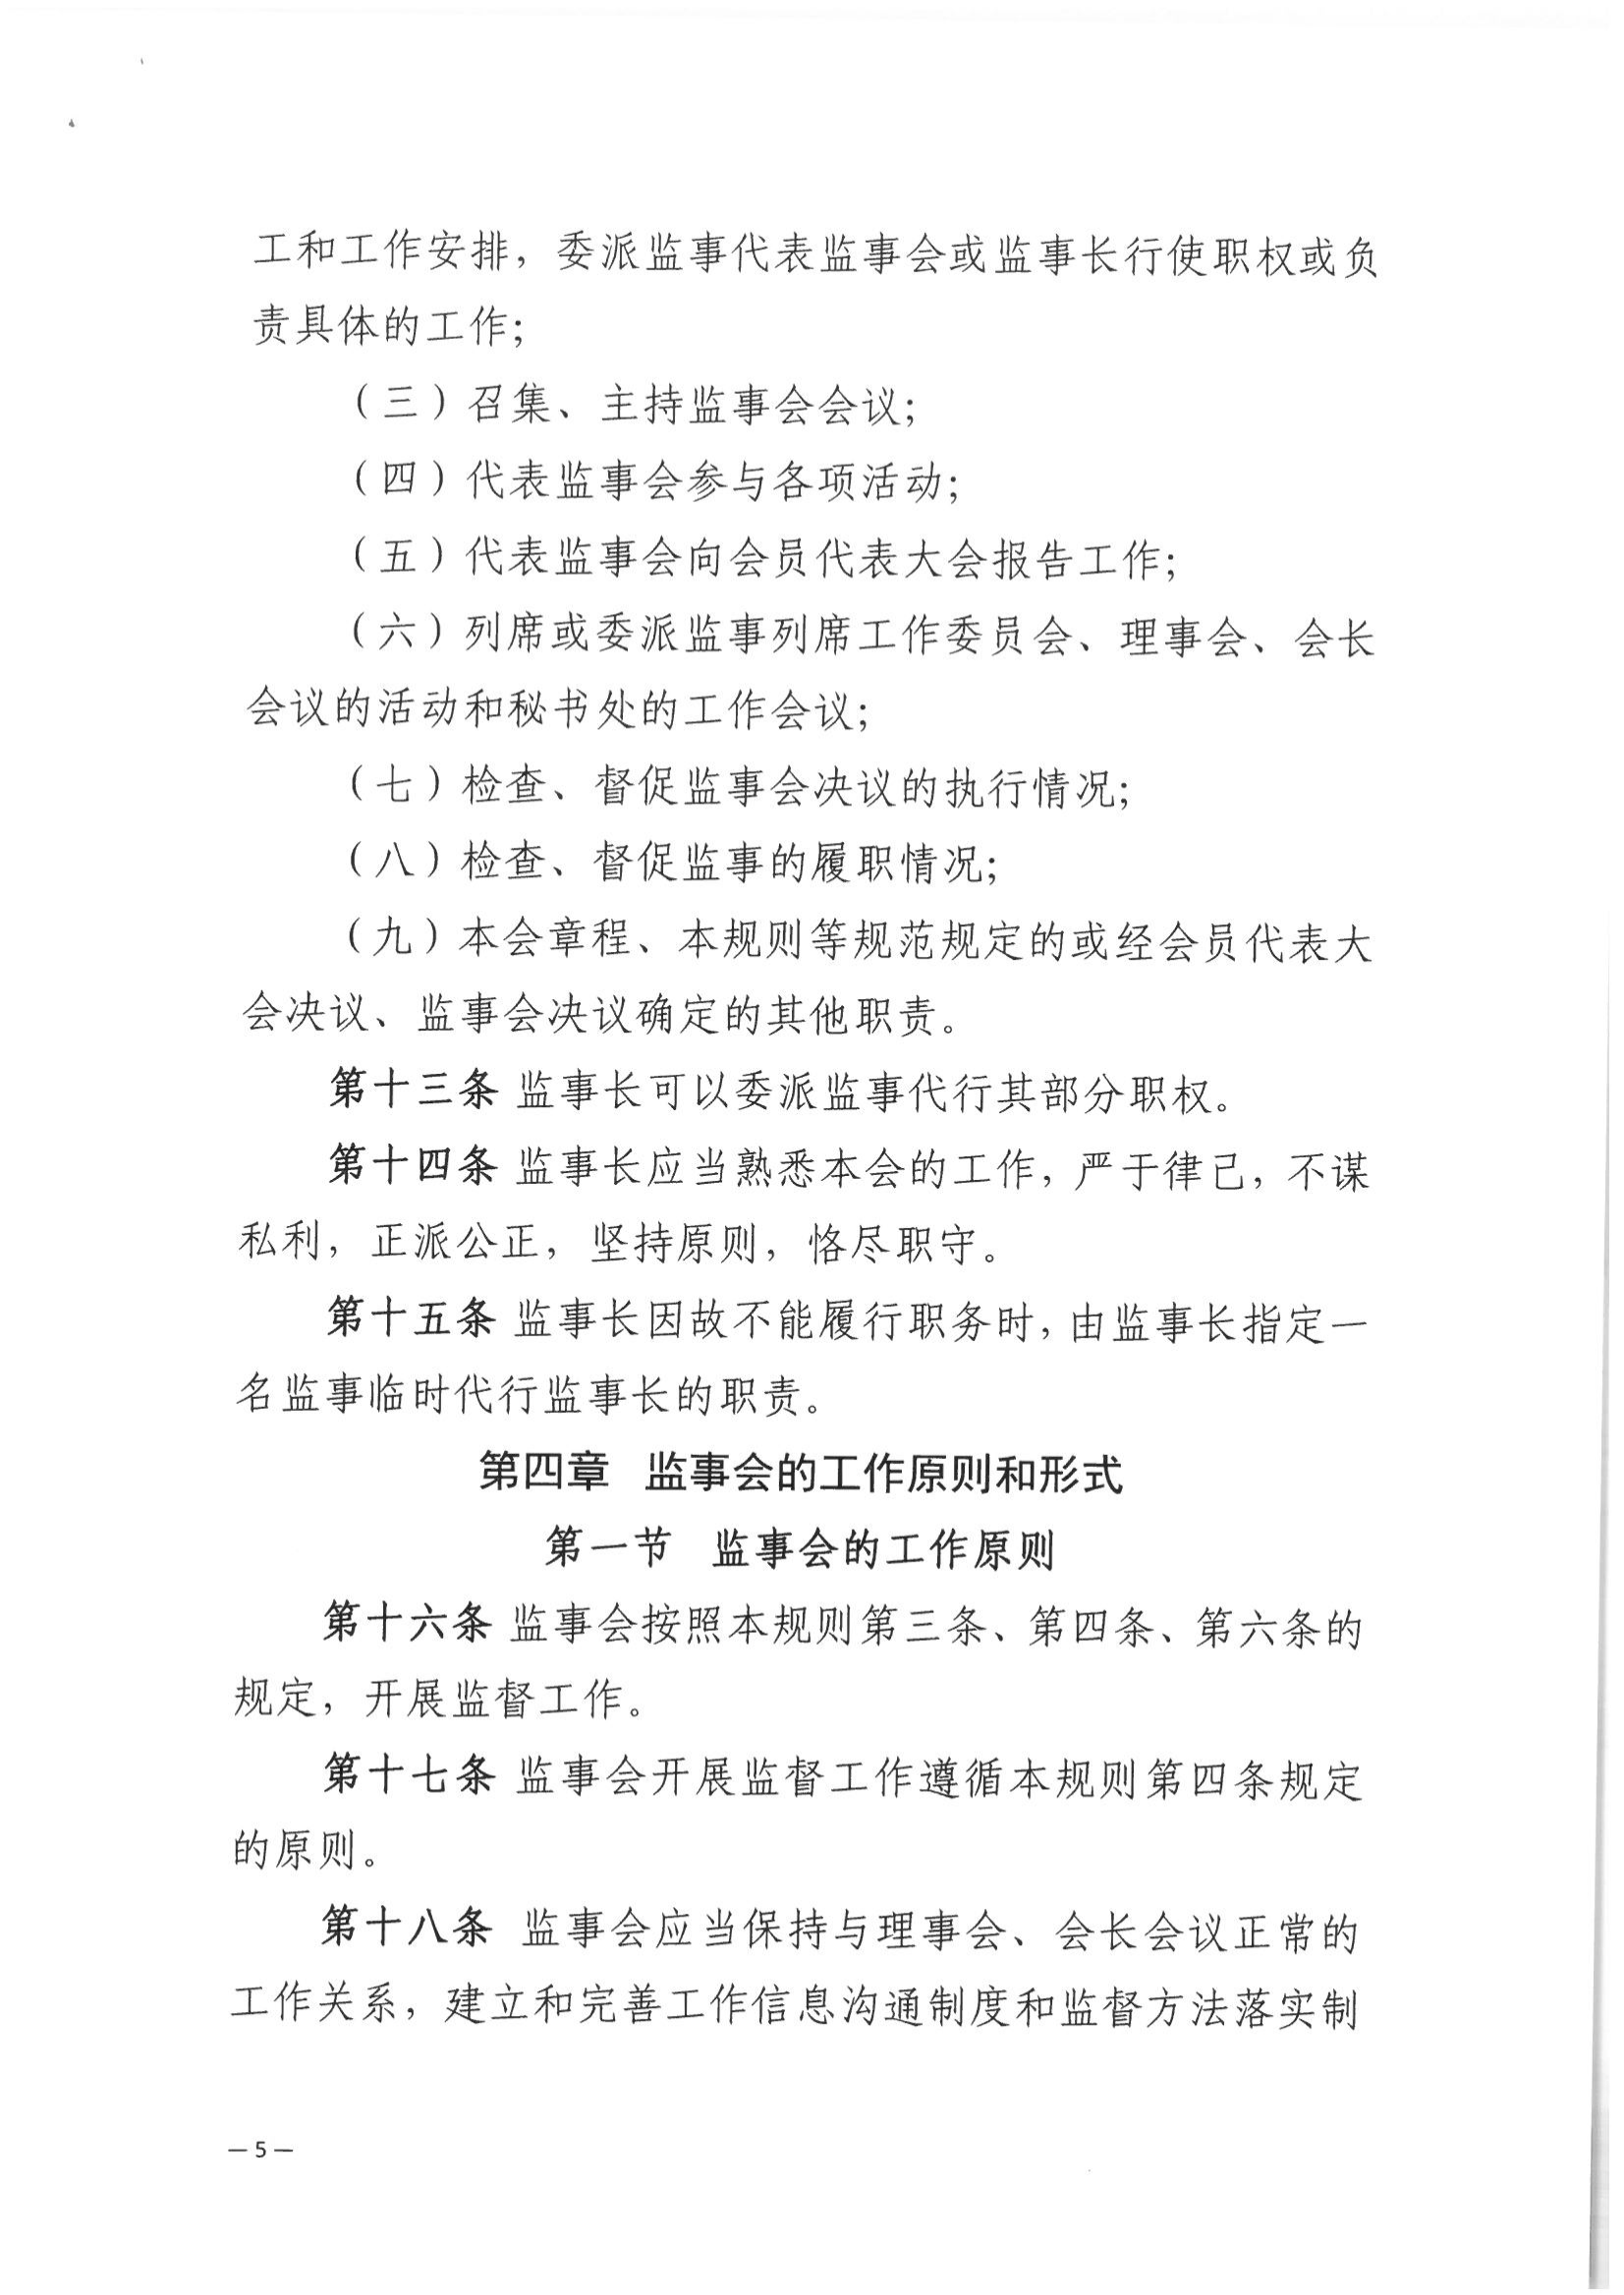 京公协字【2021】32号 北京市公证协会关于印发北京市公证协会监事会工作规则的通知_06